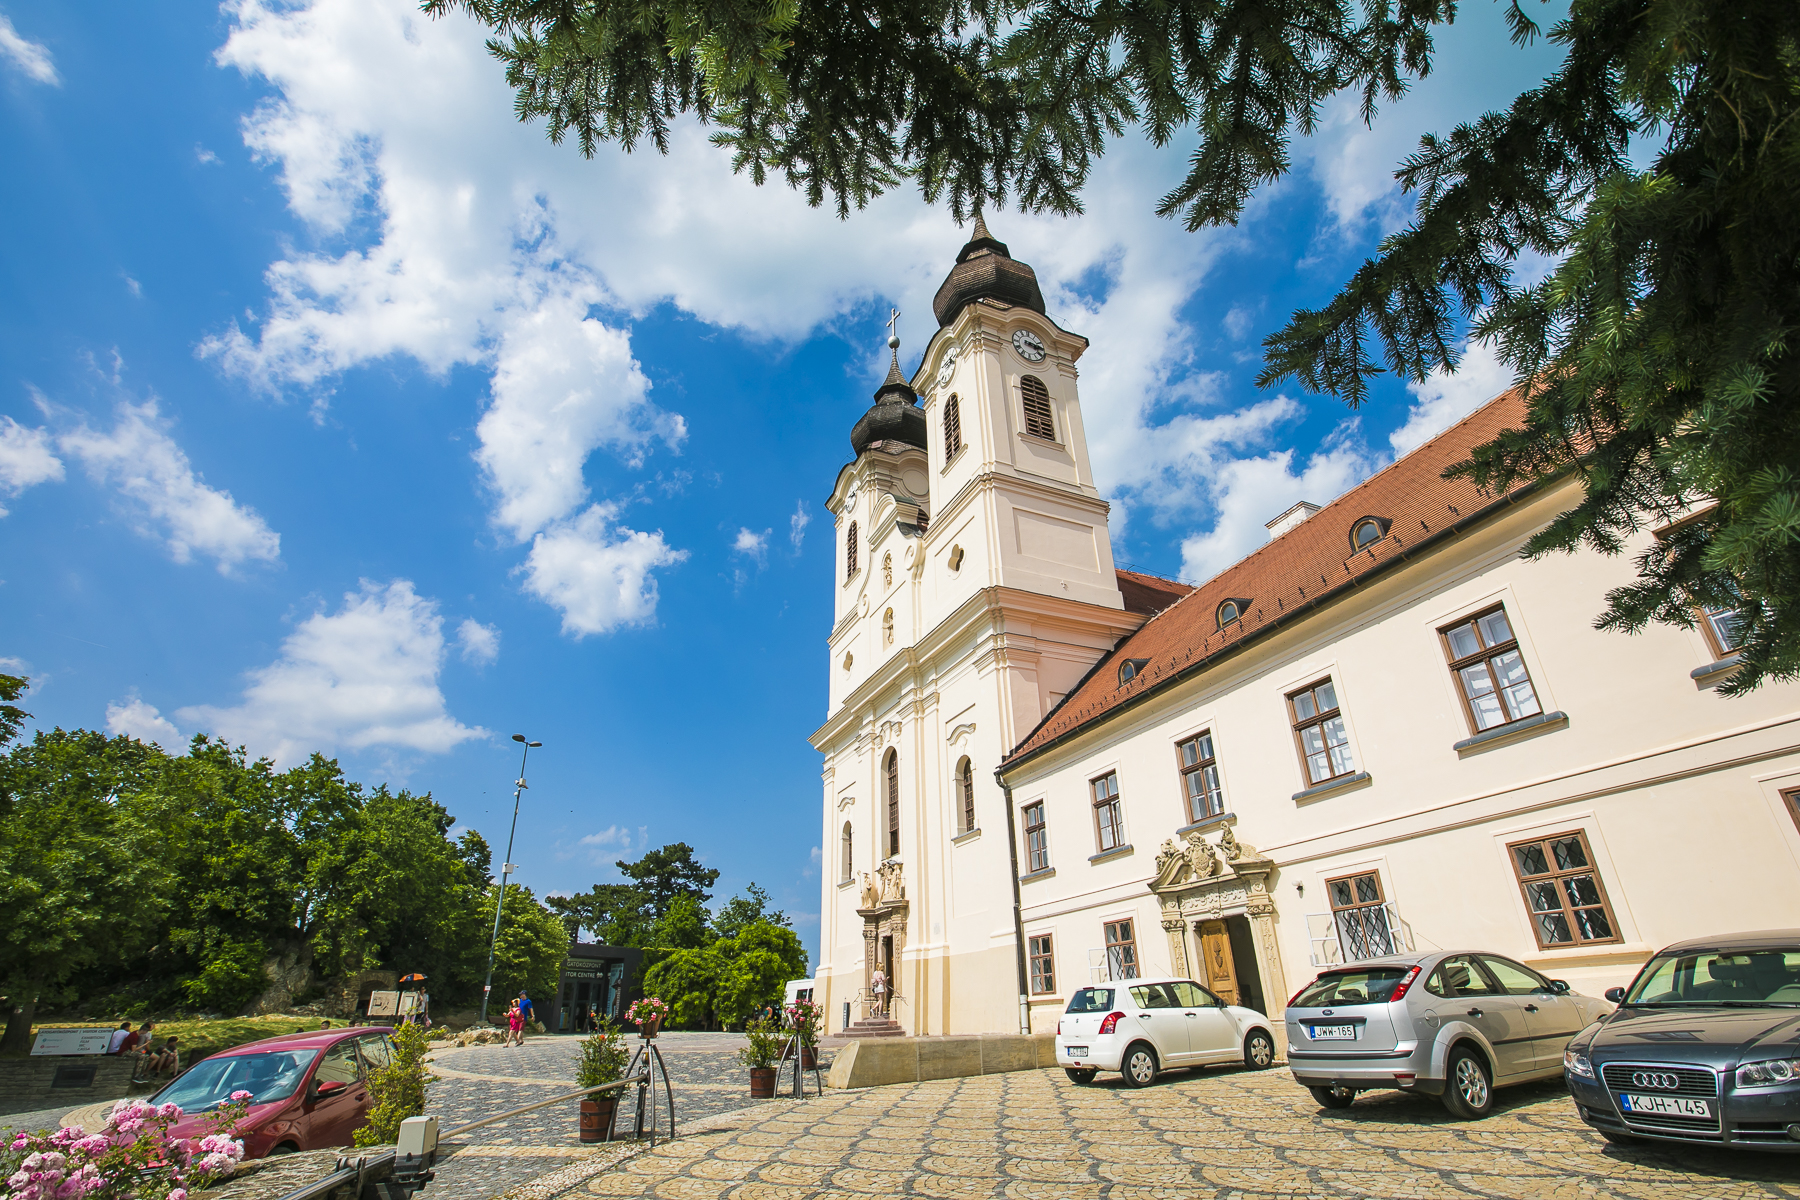 匈牙利蒂豪尼小镇,中欧最迷人风光汇聚于此,全球游客的度假天堂